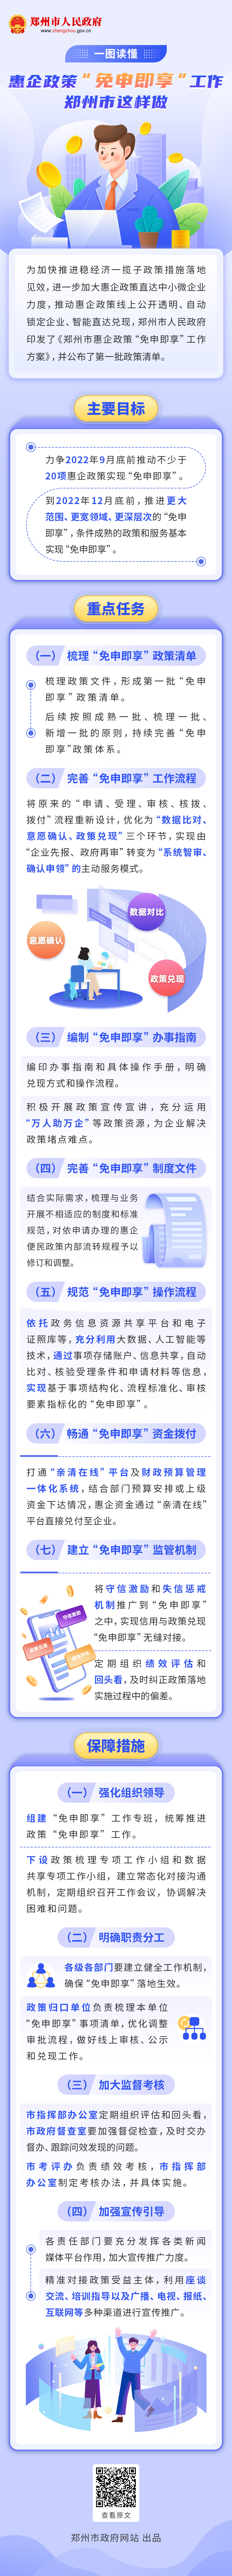 一图读懂《惠企政策“免申即享”工作-郑州市这样做》(2).jpg